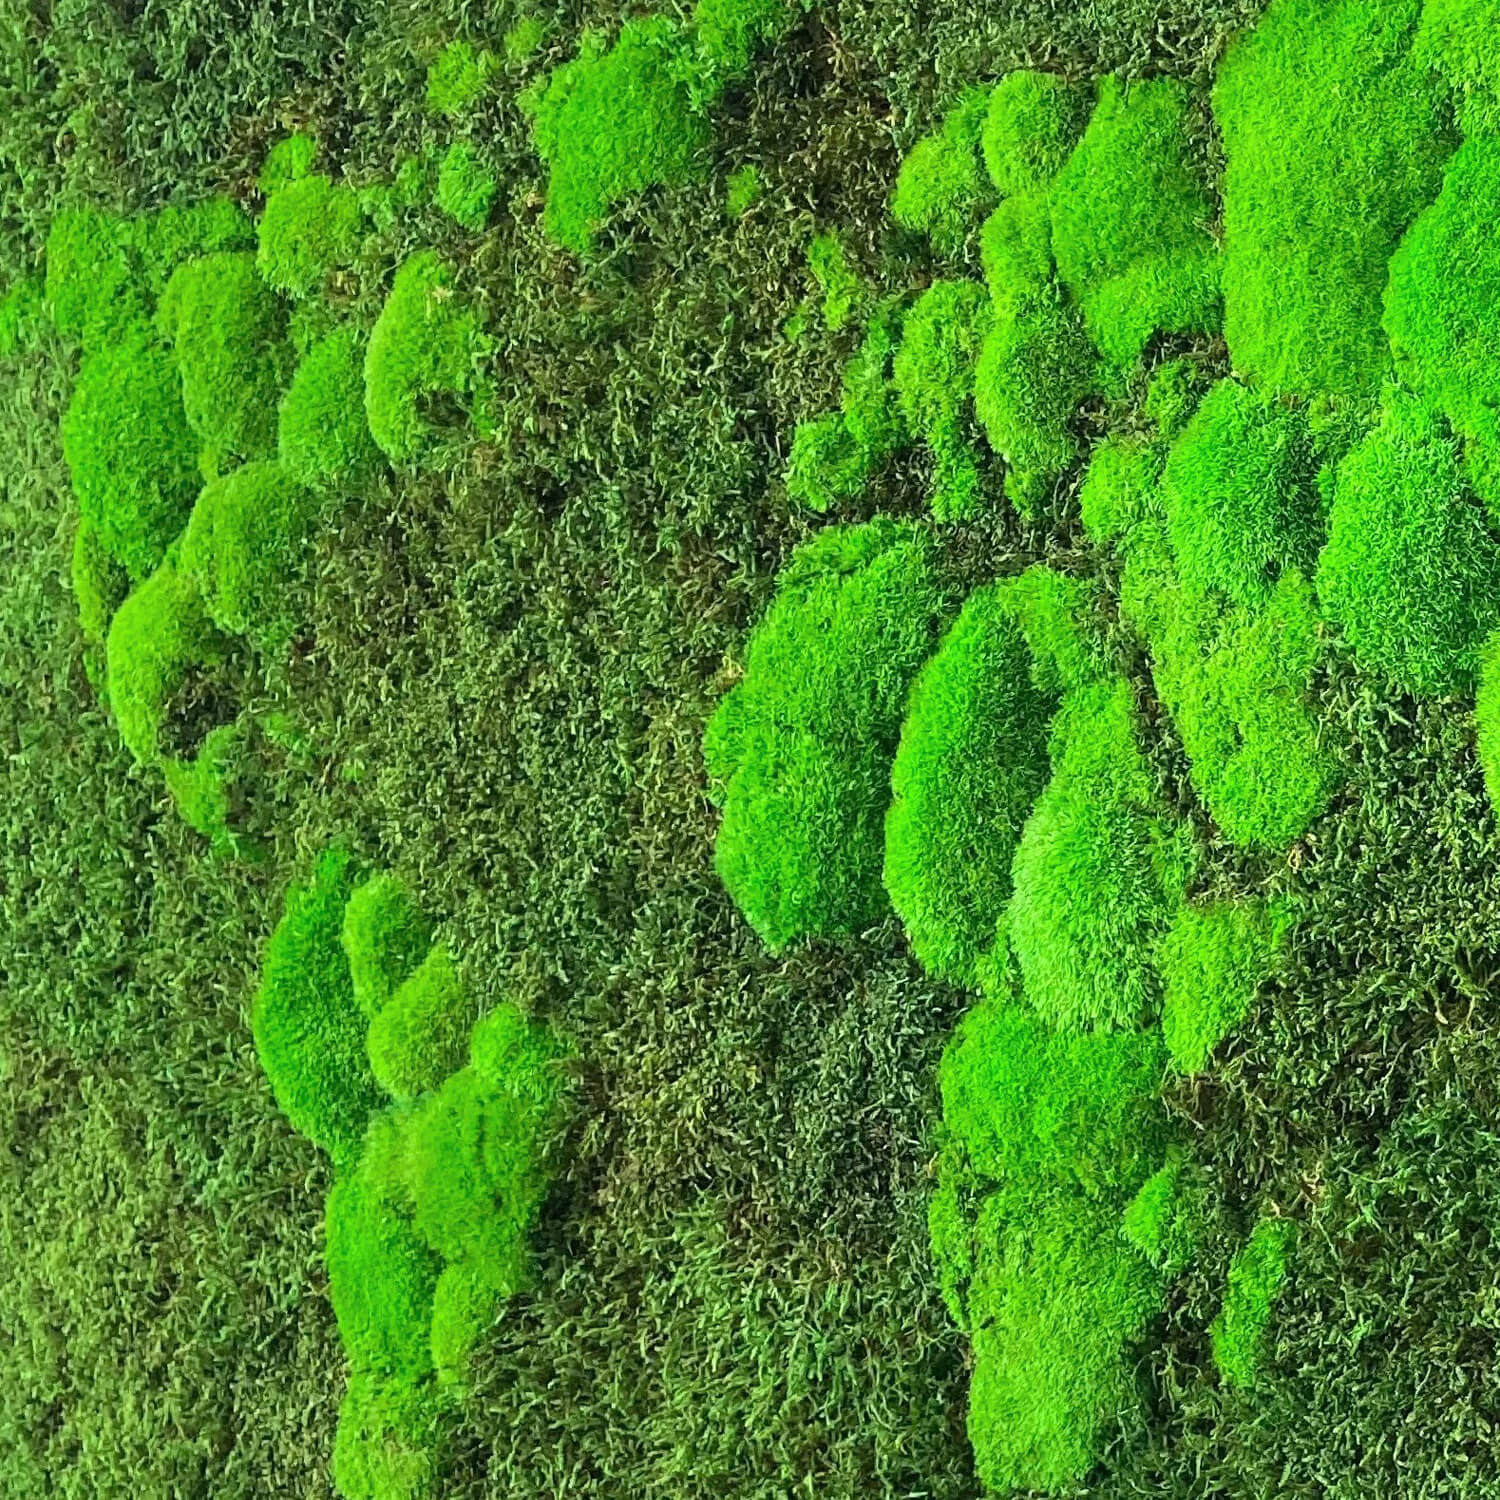 Moss World Map - detail